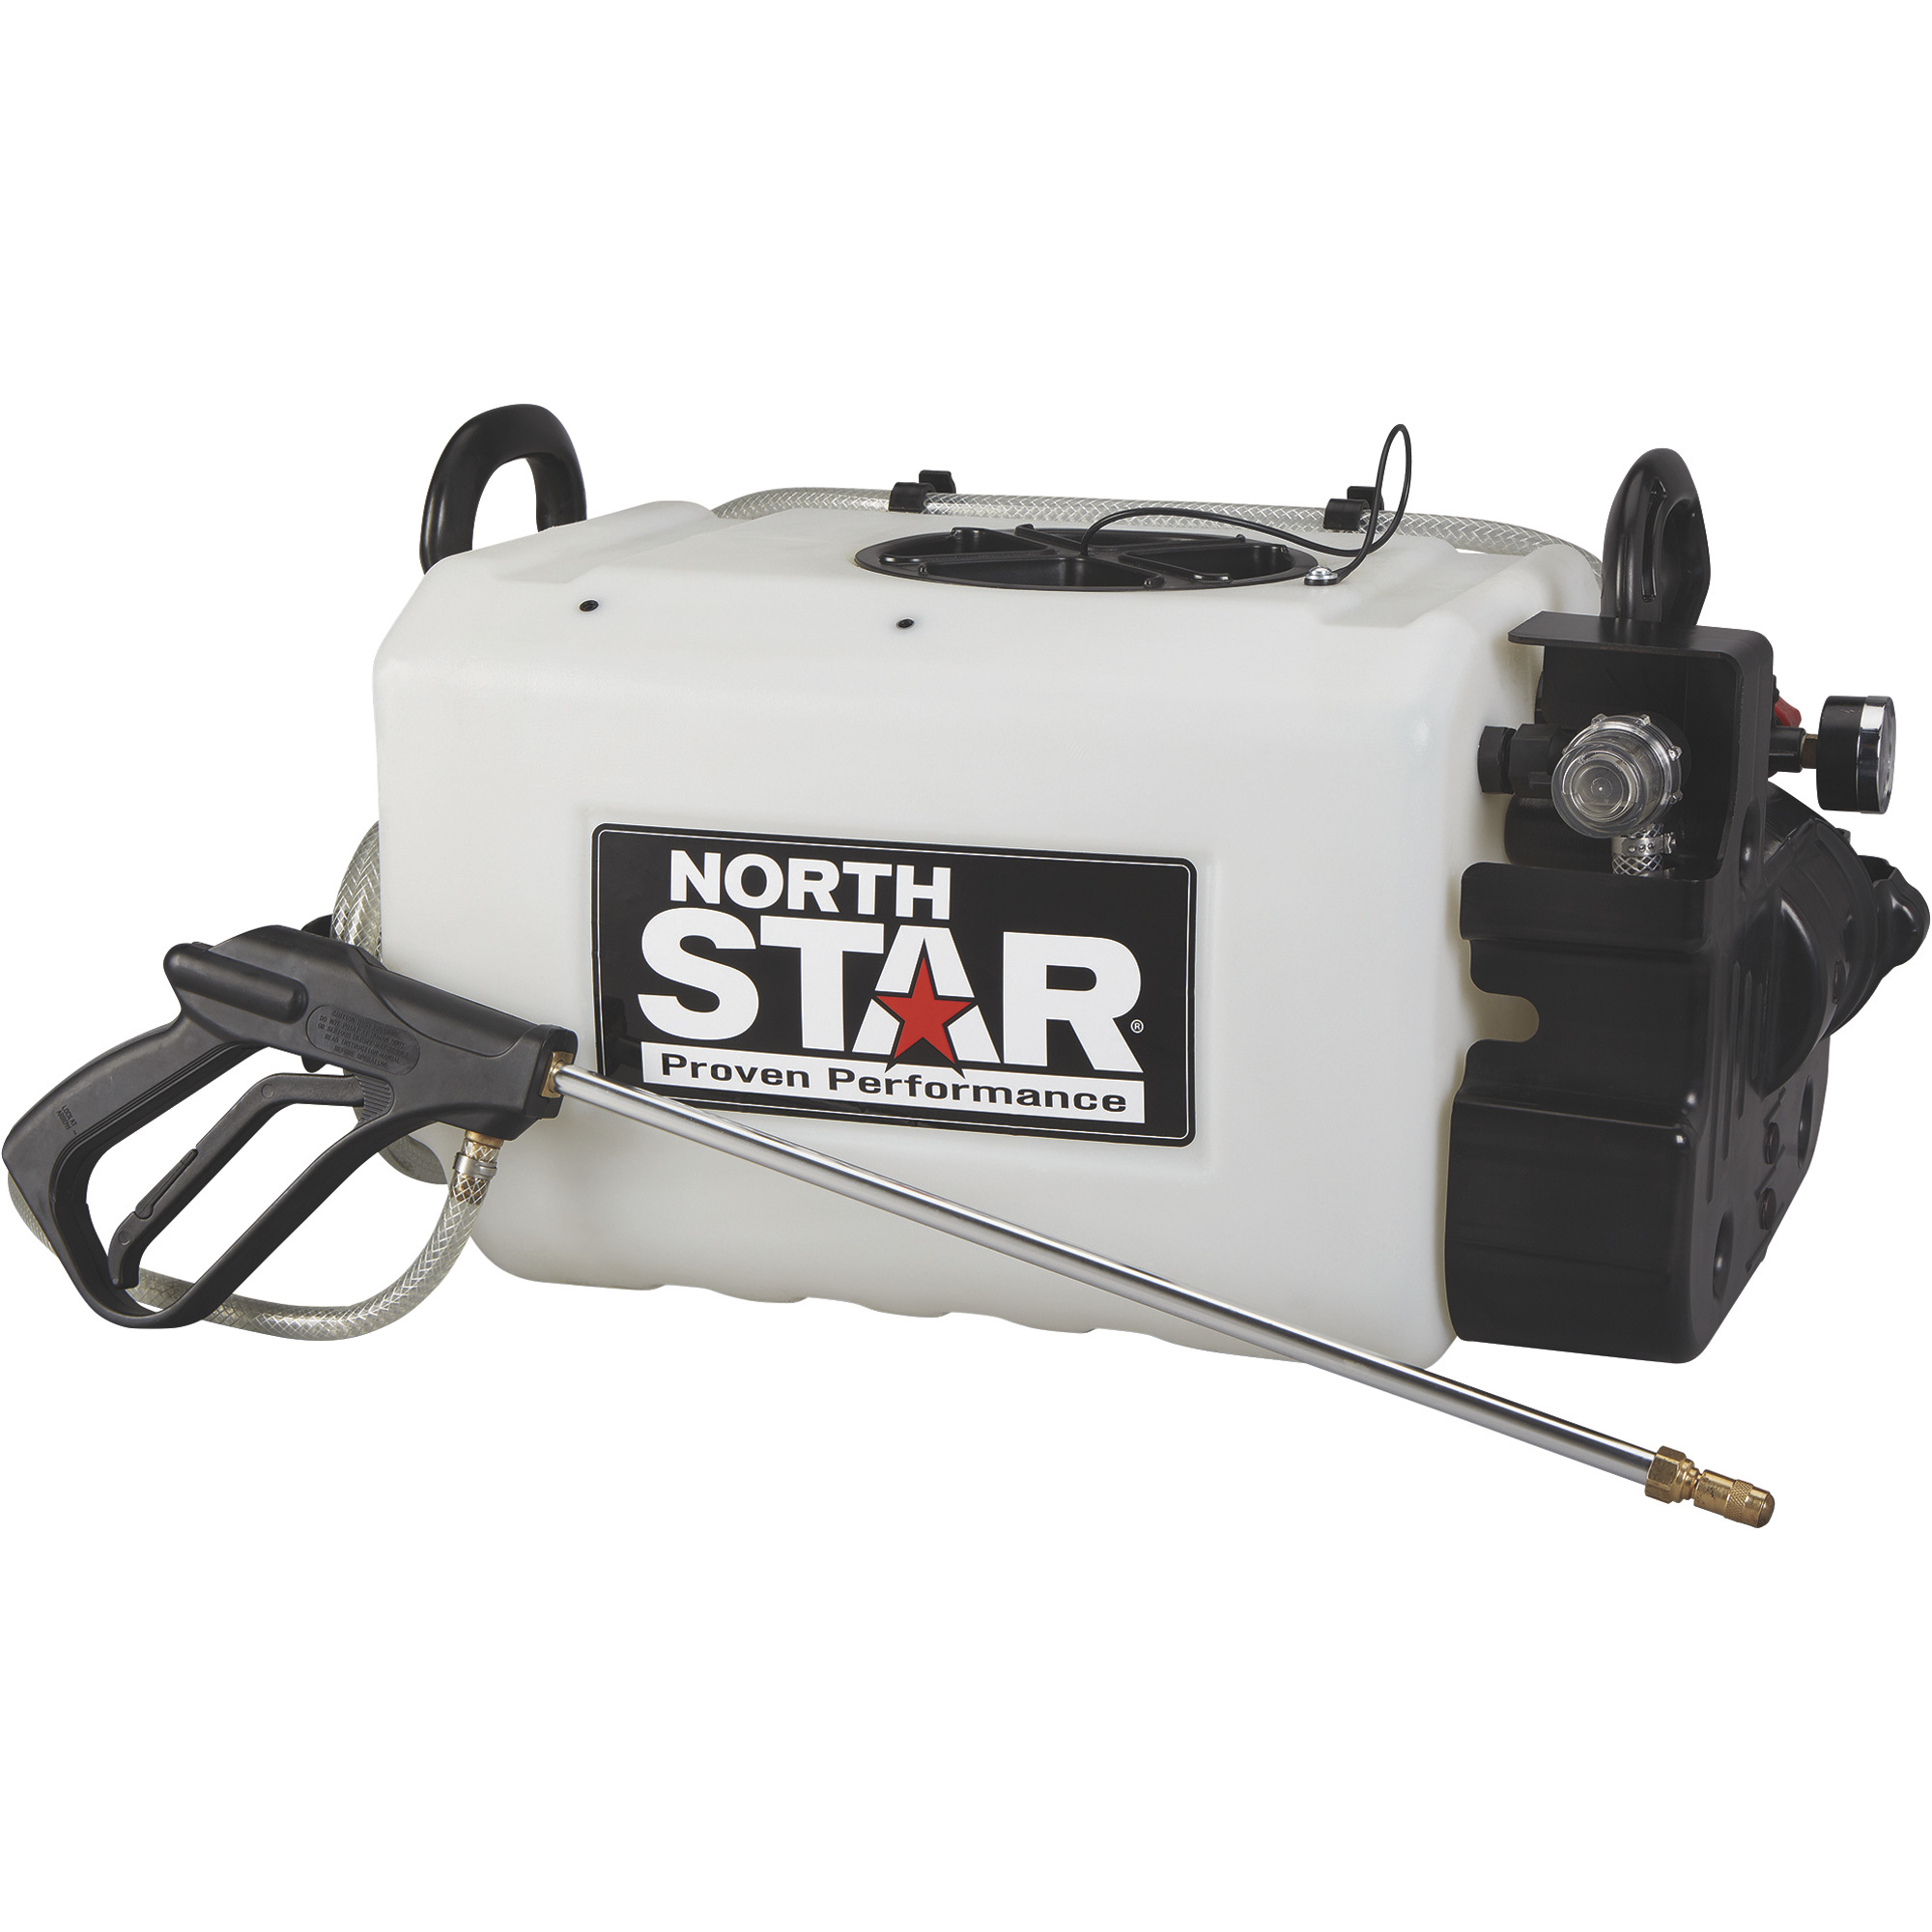 NorthStar ATV Spot Sprayer â 10-Gallon Capacity, 1.1 GPM, 12 Volt